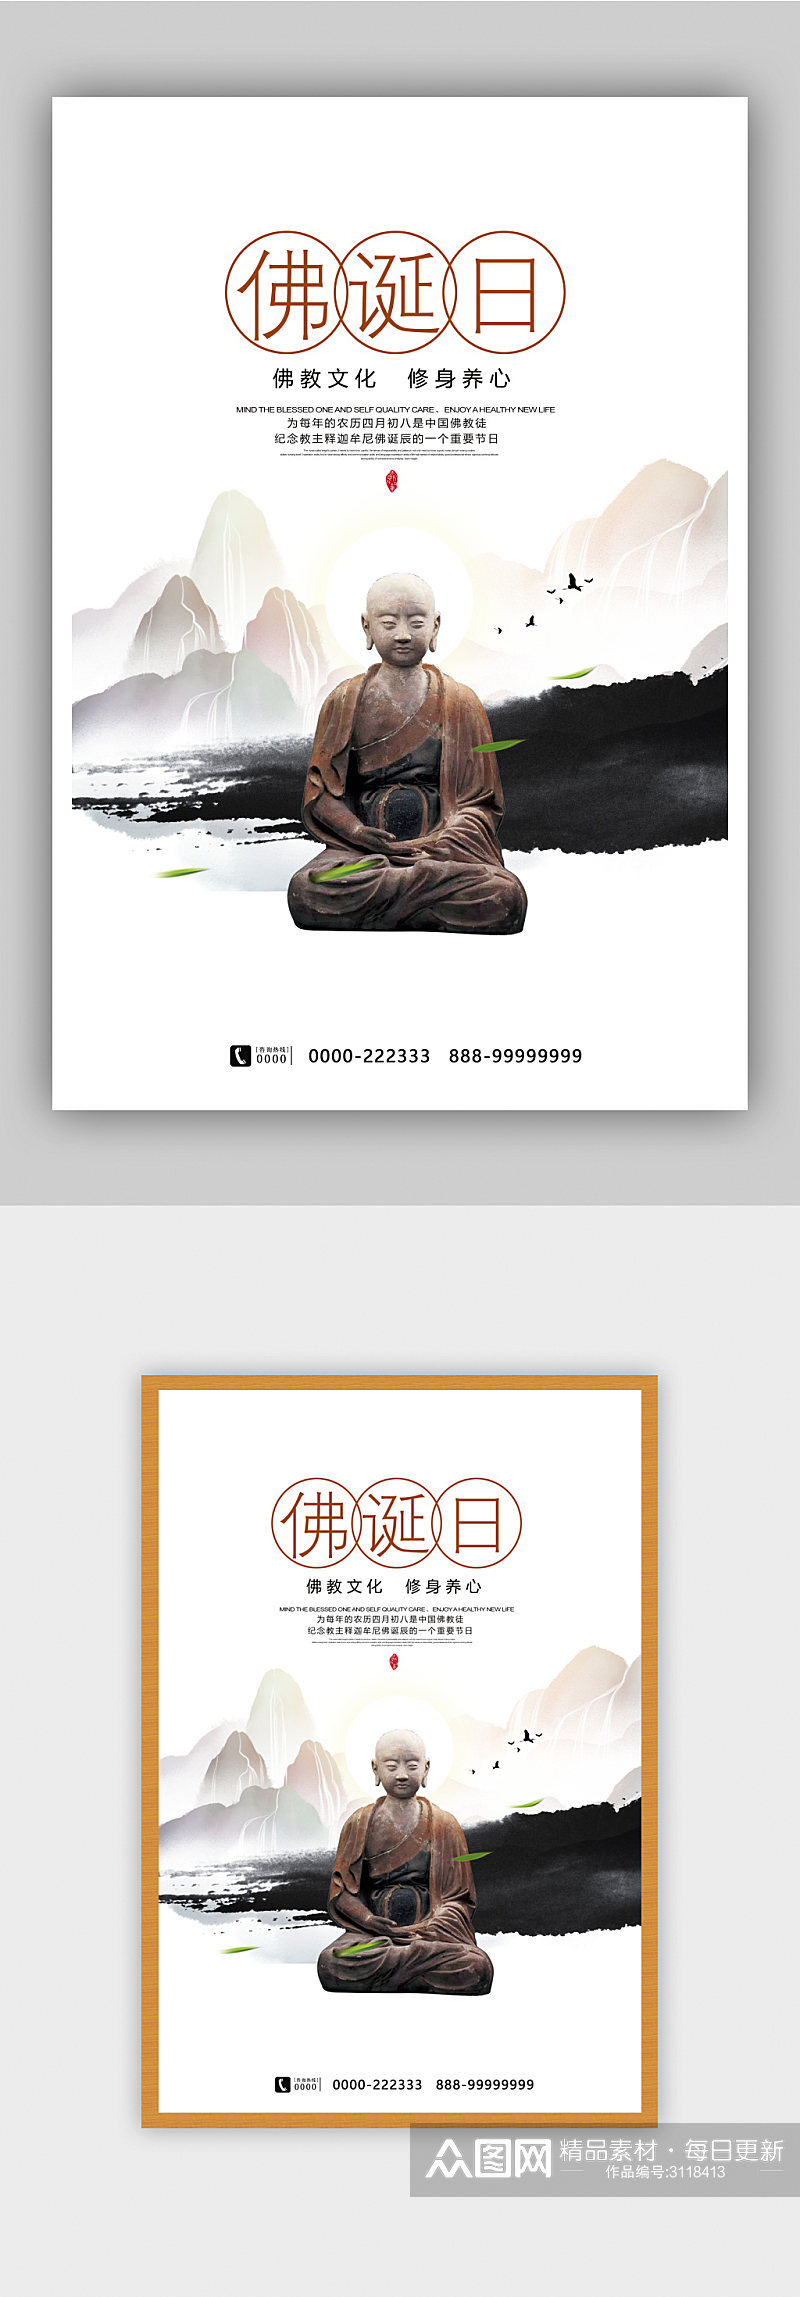 佛诞日佛教文化宣传海报设计素材